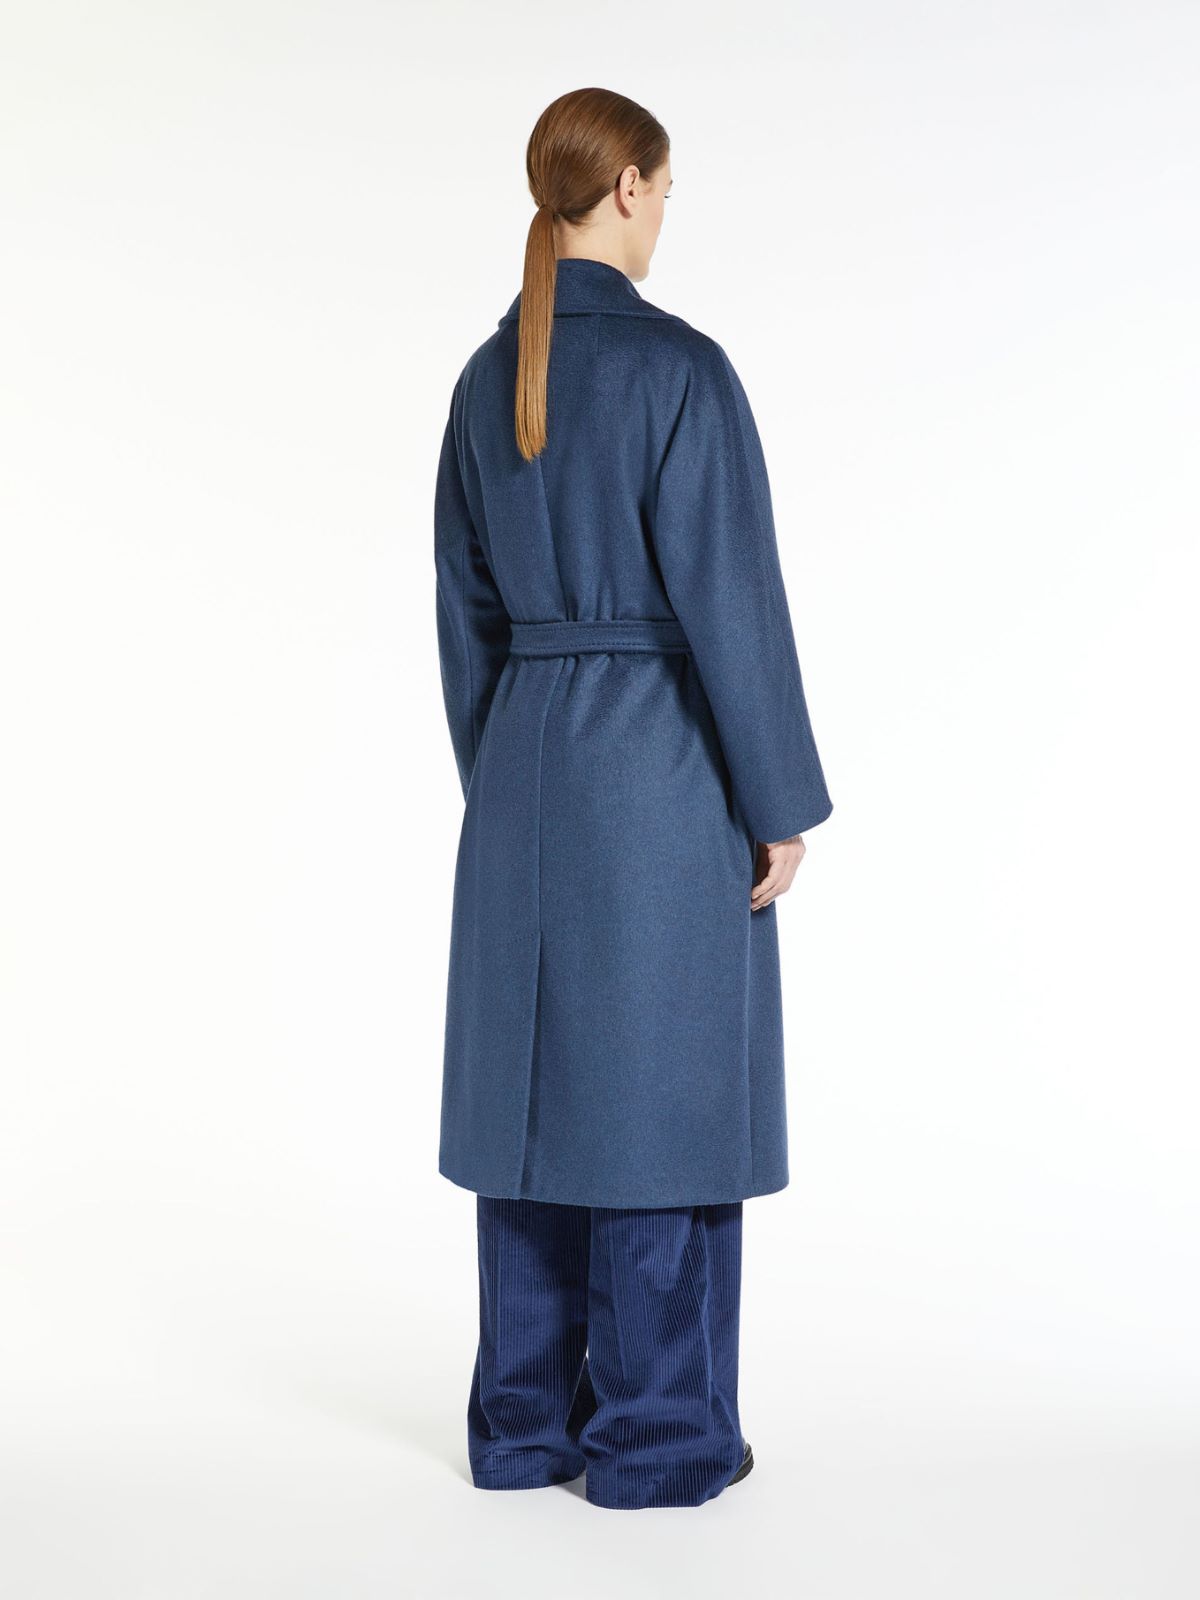 Wool broadcloth coat - NAVY - Weekend Max Mara - 3